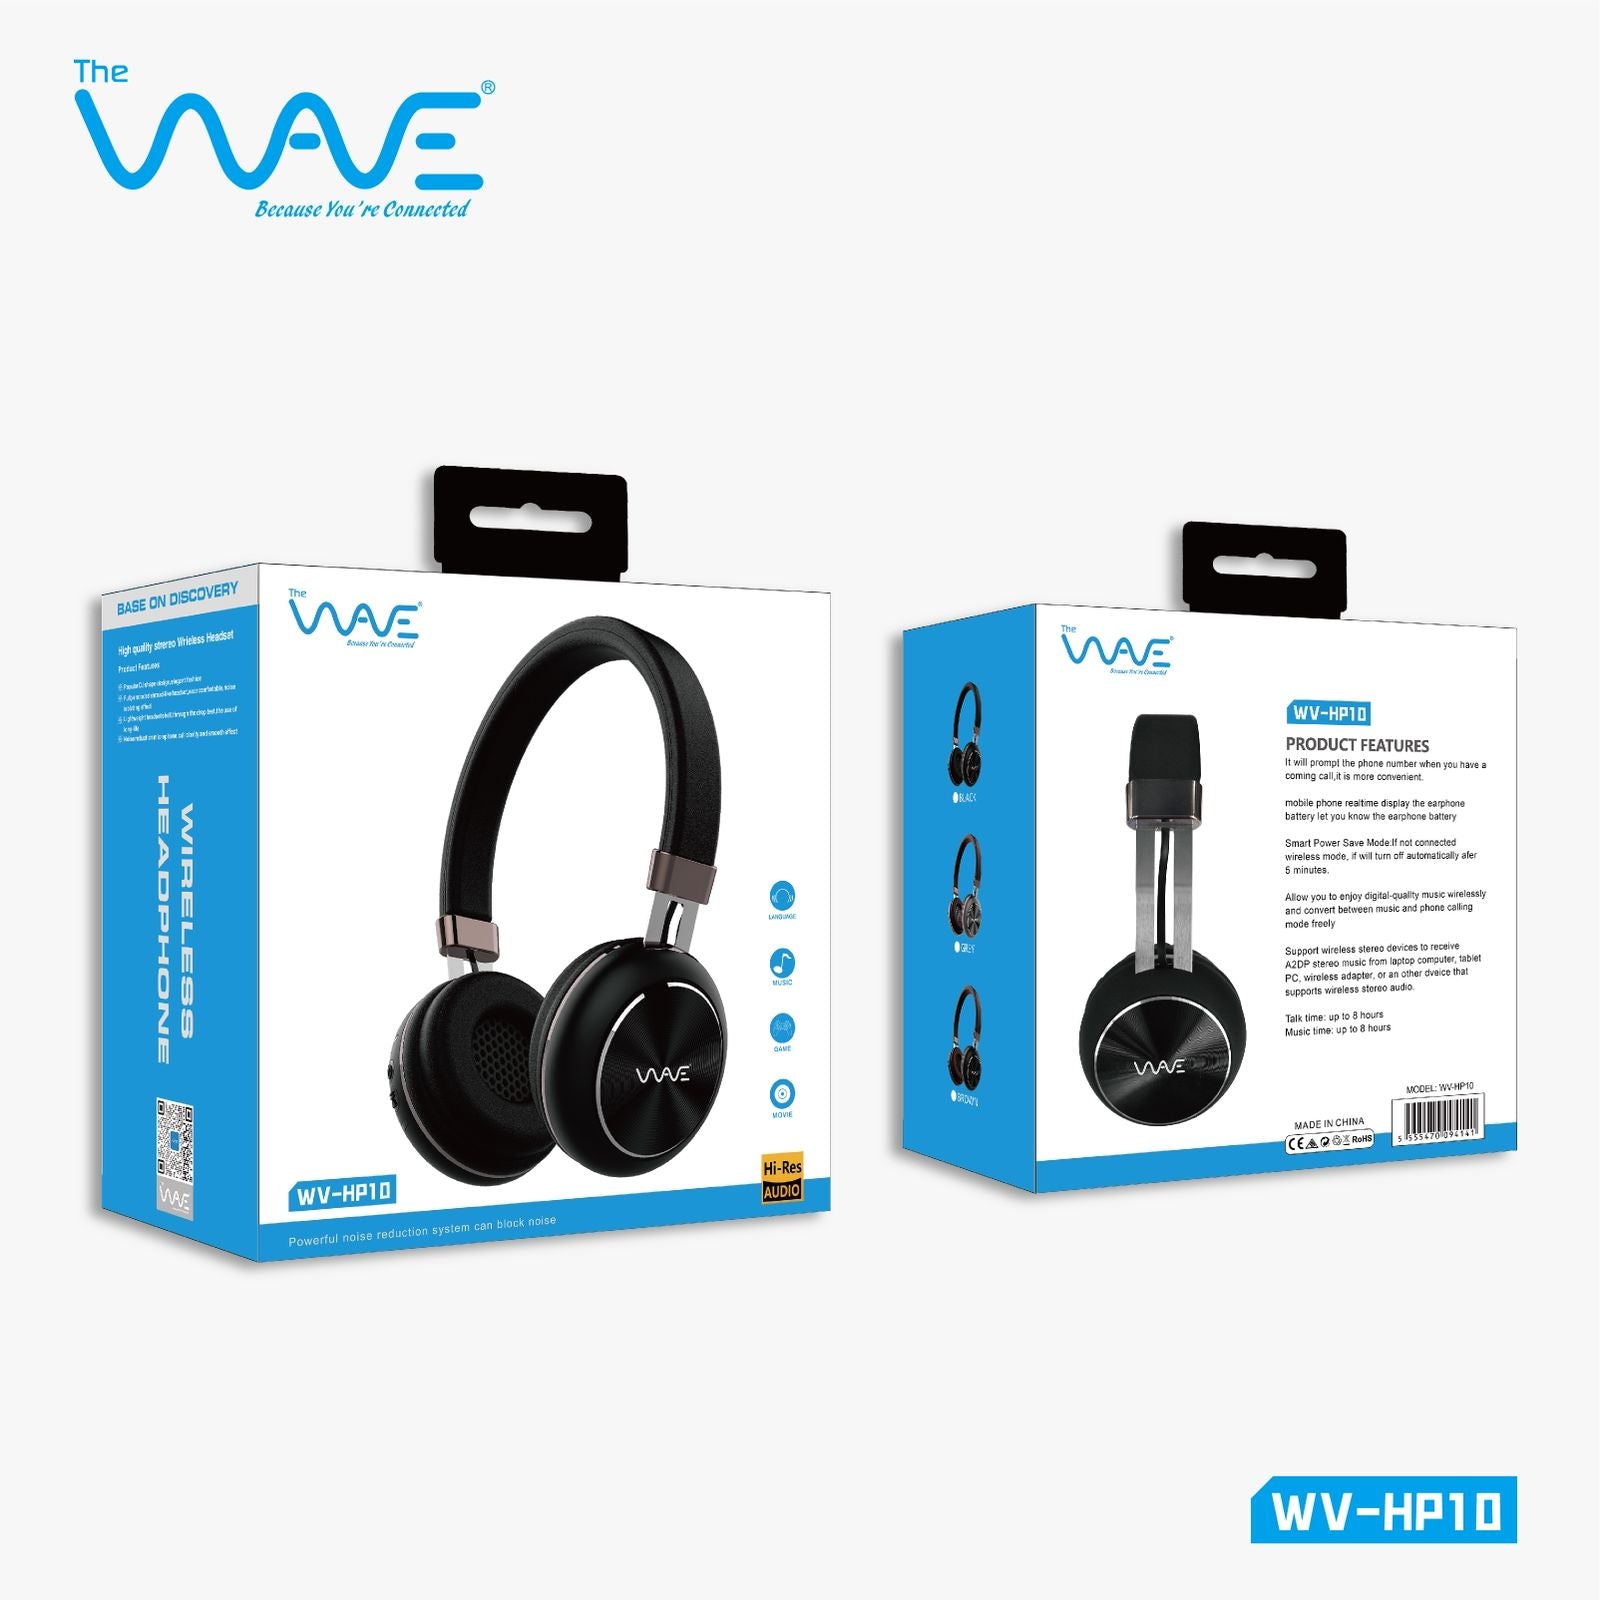 WV-HP10 Headphones